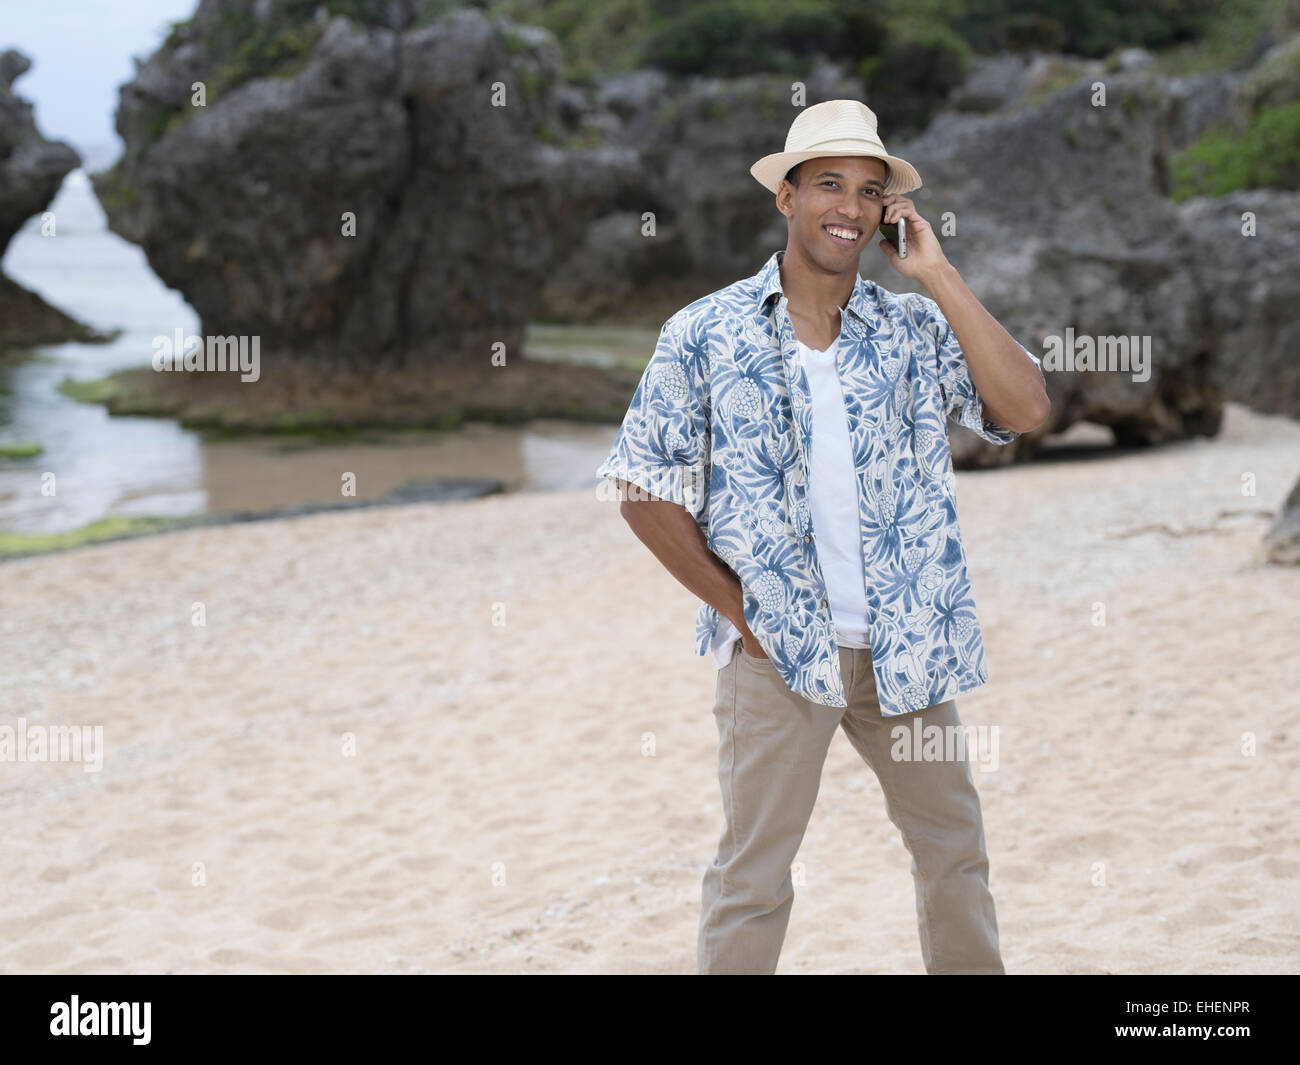 L'homme qui téléphone ou téléphoner avec Apple iphone 6 smartphone pendant que sur la plage Banque D'Images